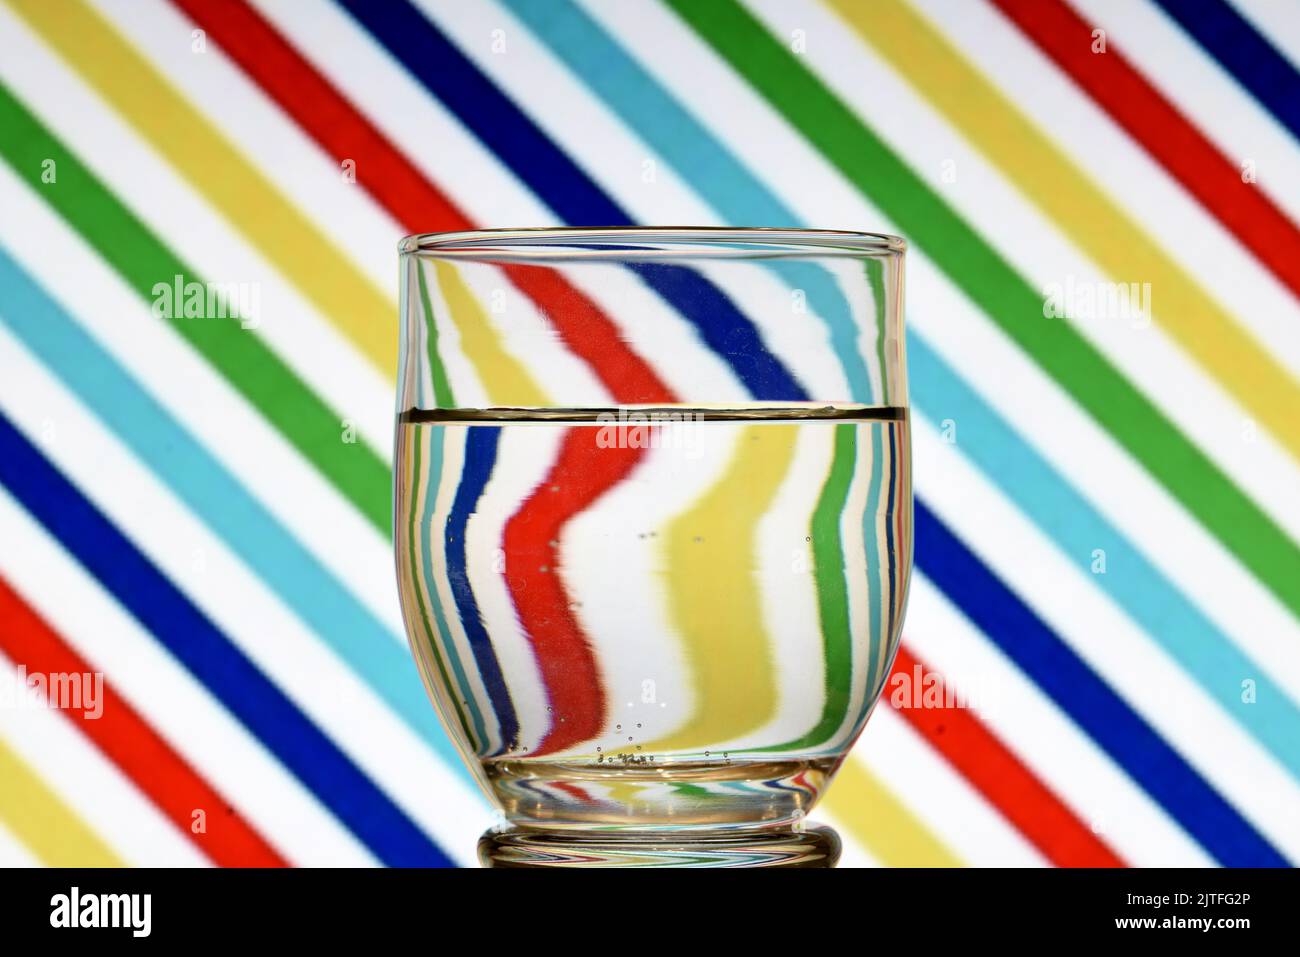 Ilusión óptica creada mediante la refracción de la luz con un vaso de agua y lineas diagonales de colores Stock Photo